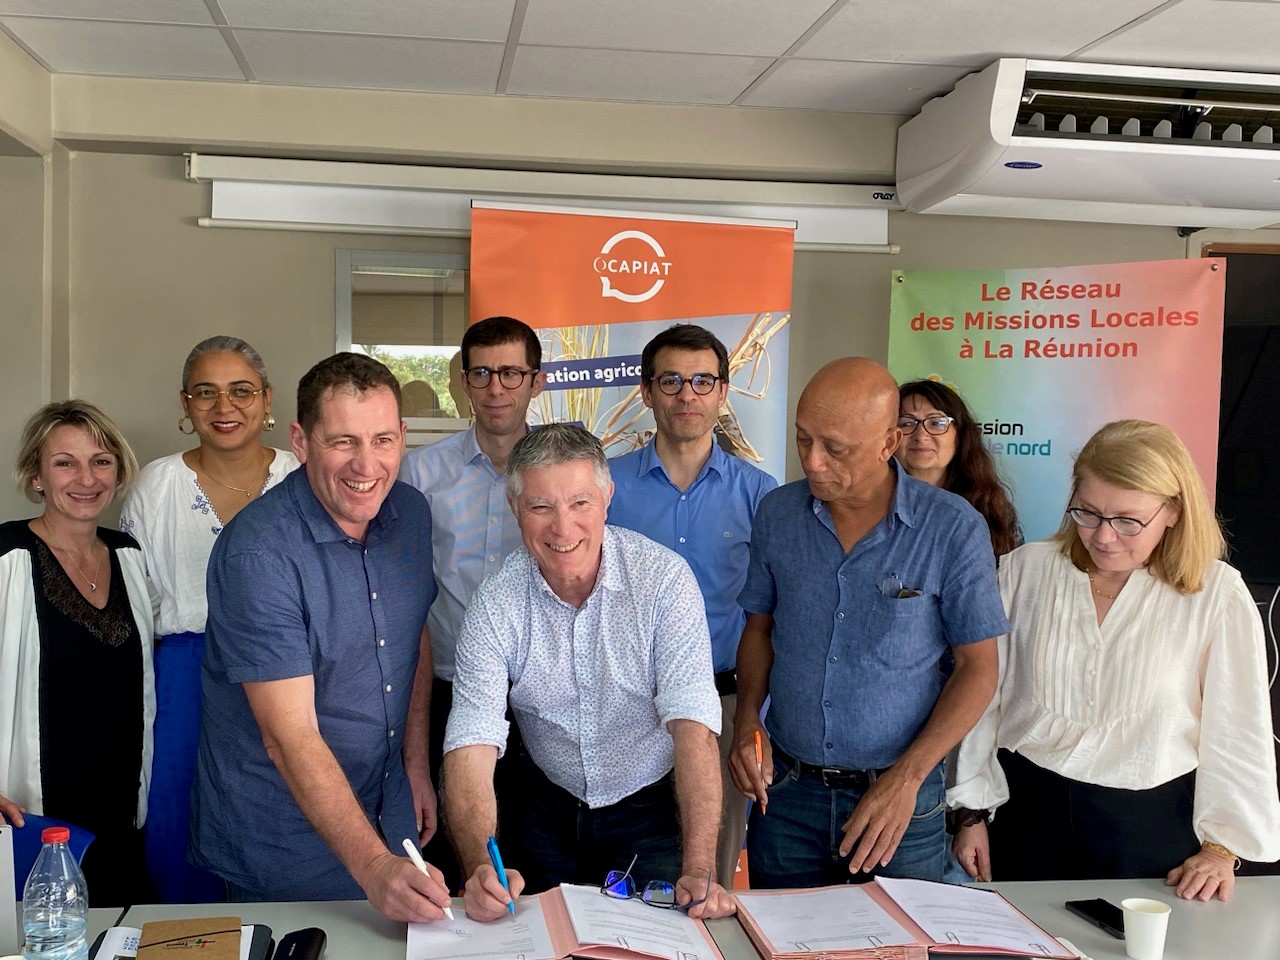 Signature d’une convention de partenariat à l’Ile de la Réunion entre l’Opérateur de compétences OCAPIAT et l’Association Régionale des Missions Locales